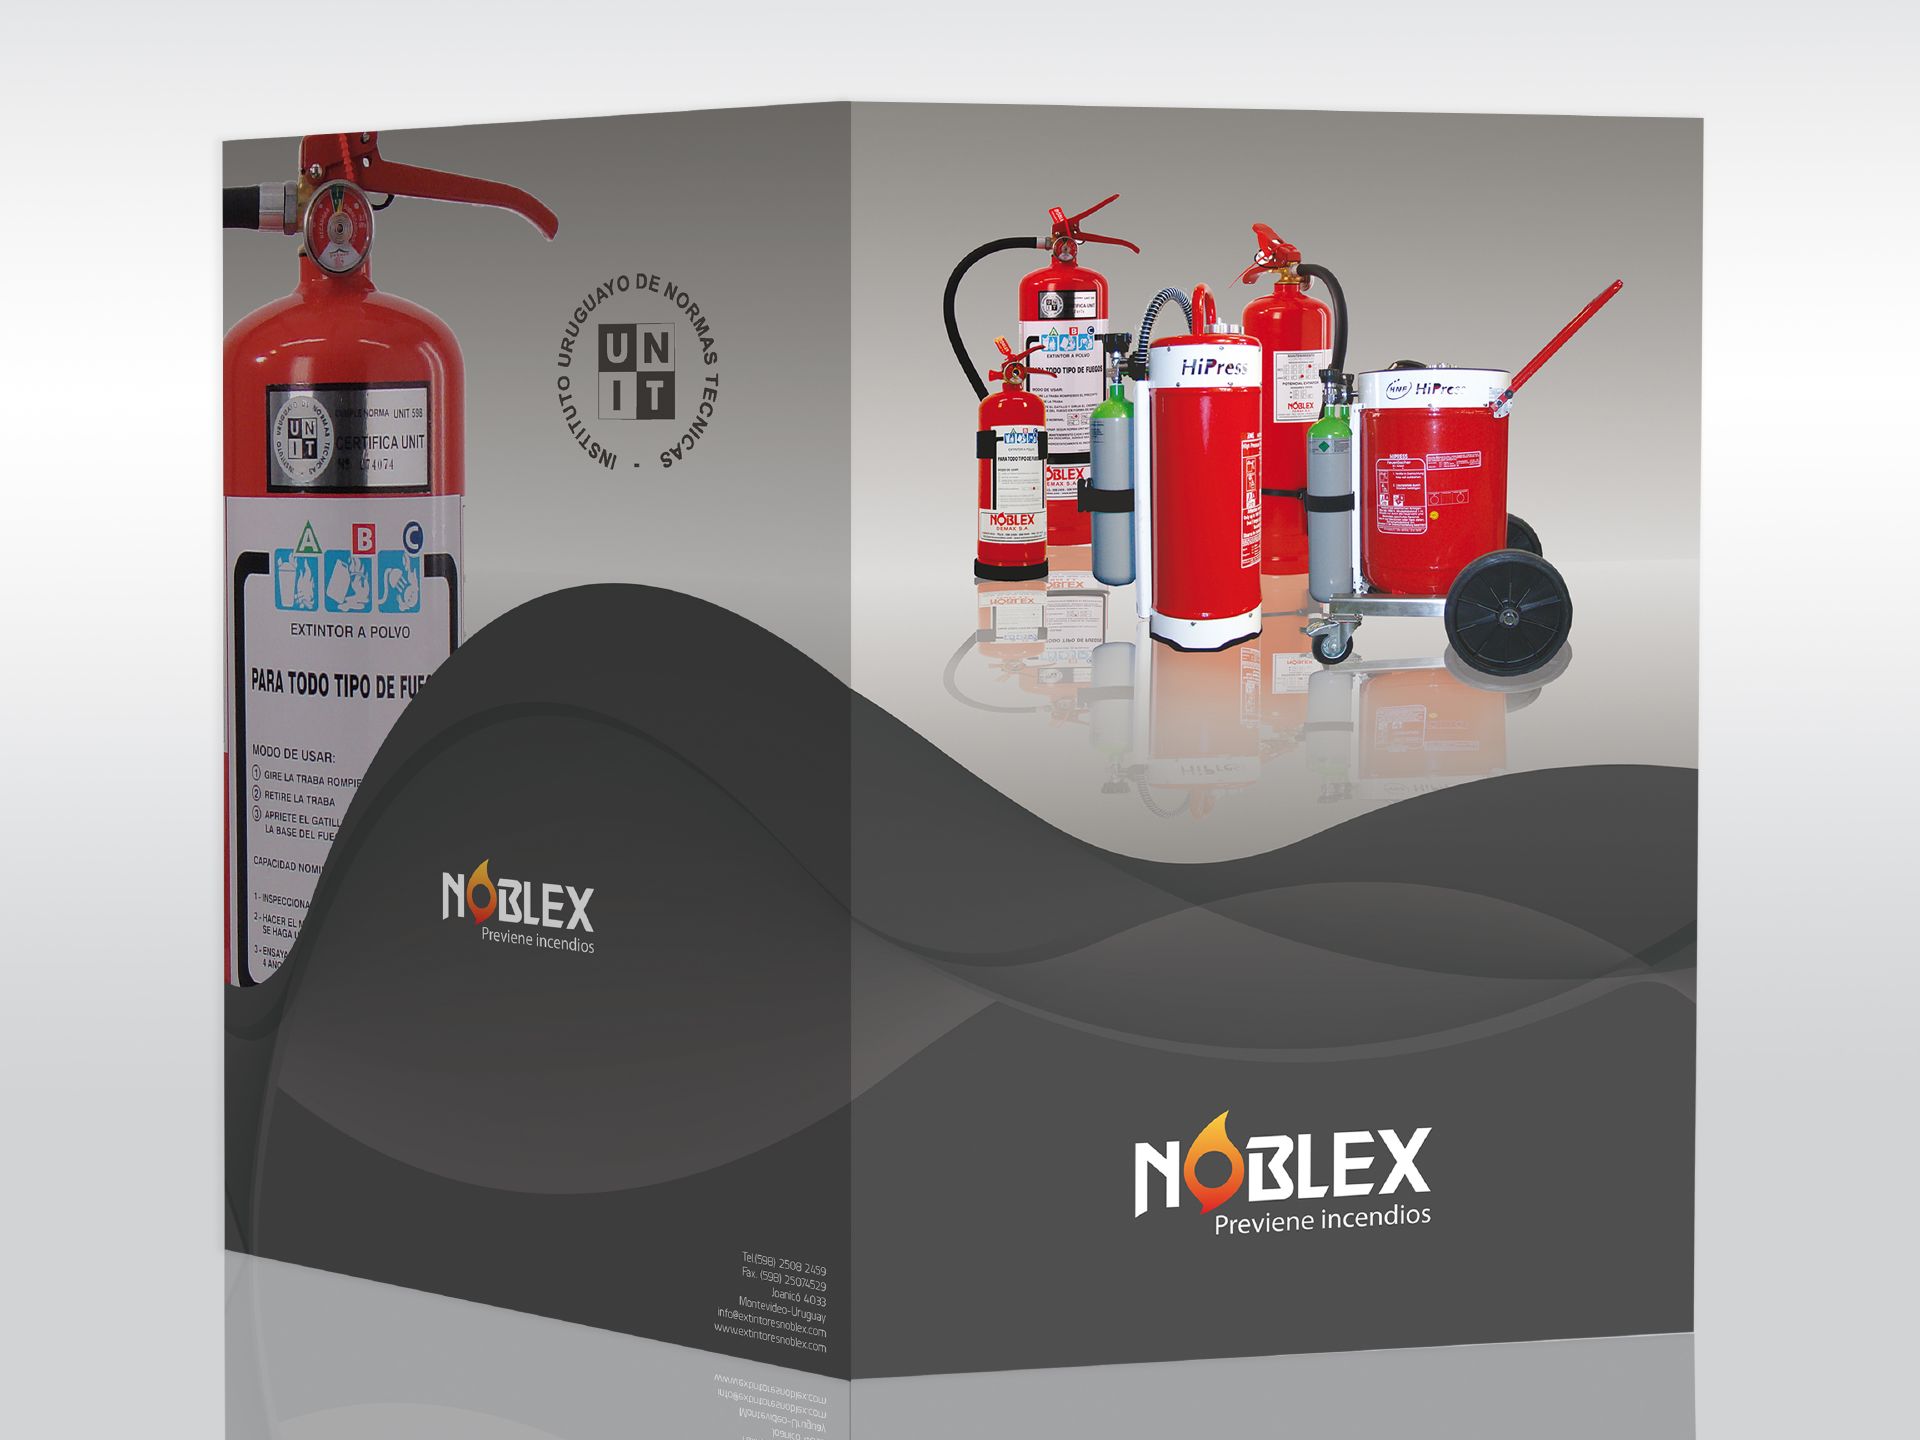 Catálogo de productos Extintores Noblex